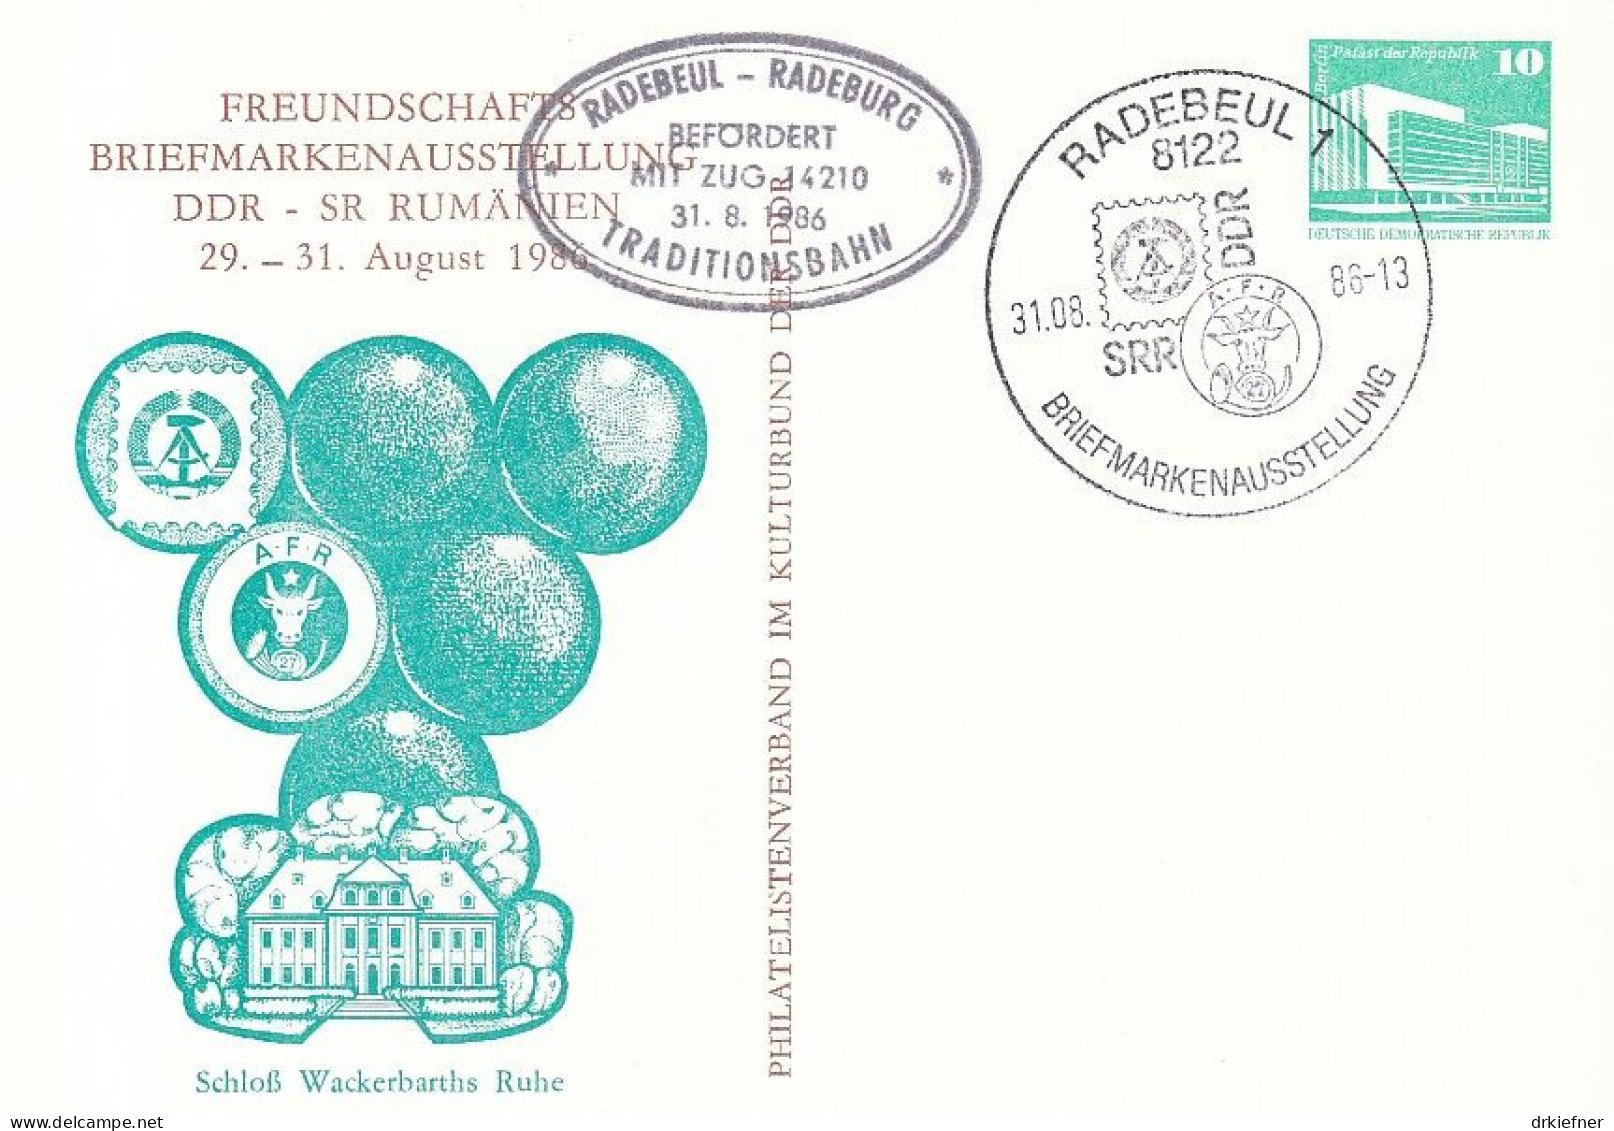 DDR PP 18, Gebraucht, SoSt: Radebeul, Briefmarkenausstellung DDR-Rumänien 1986, Bahnpost Radebeul-Radeburg - Privatpostkarten - Gebraucht